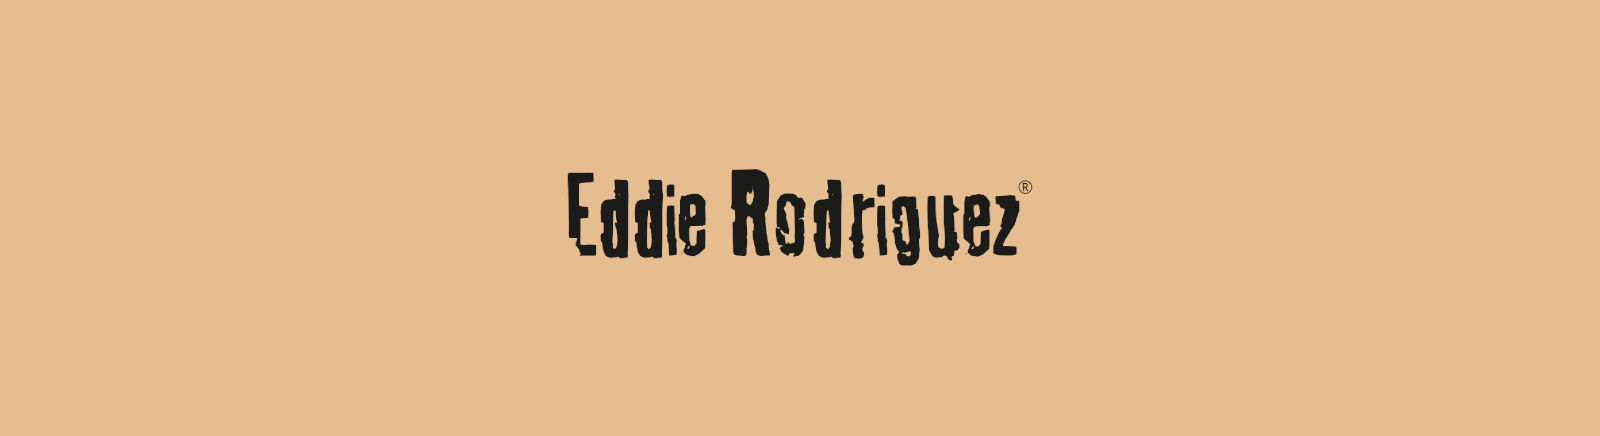 Juppen: Eddie Rodriguez Wedges für Damen online shoppen